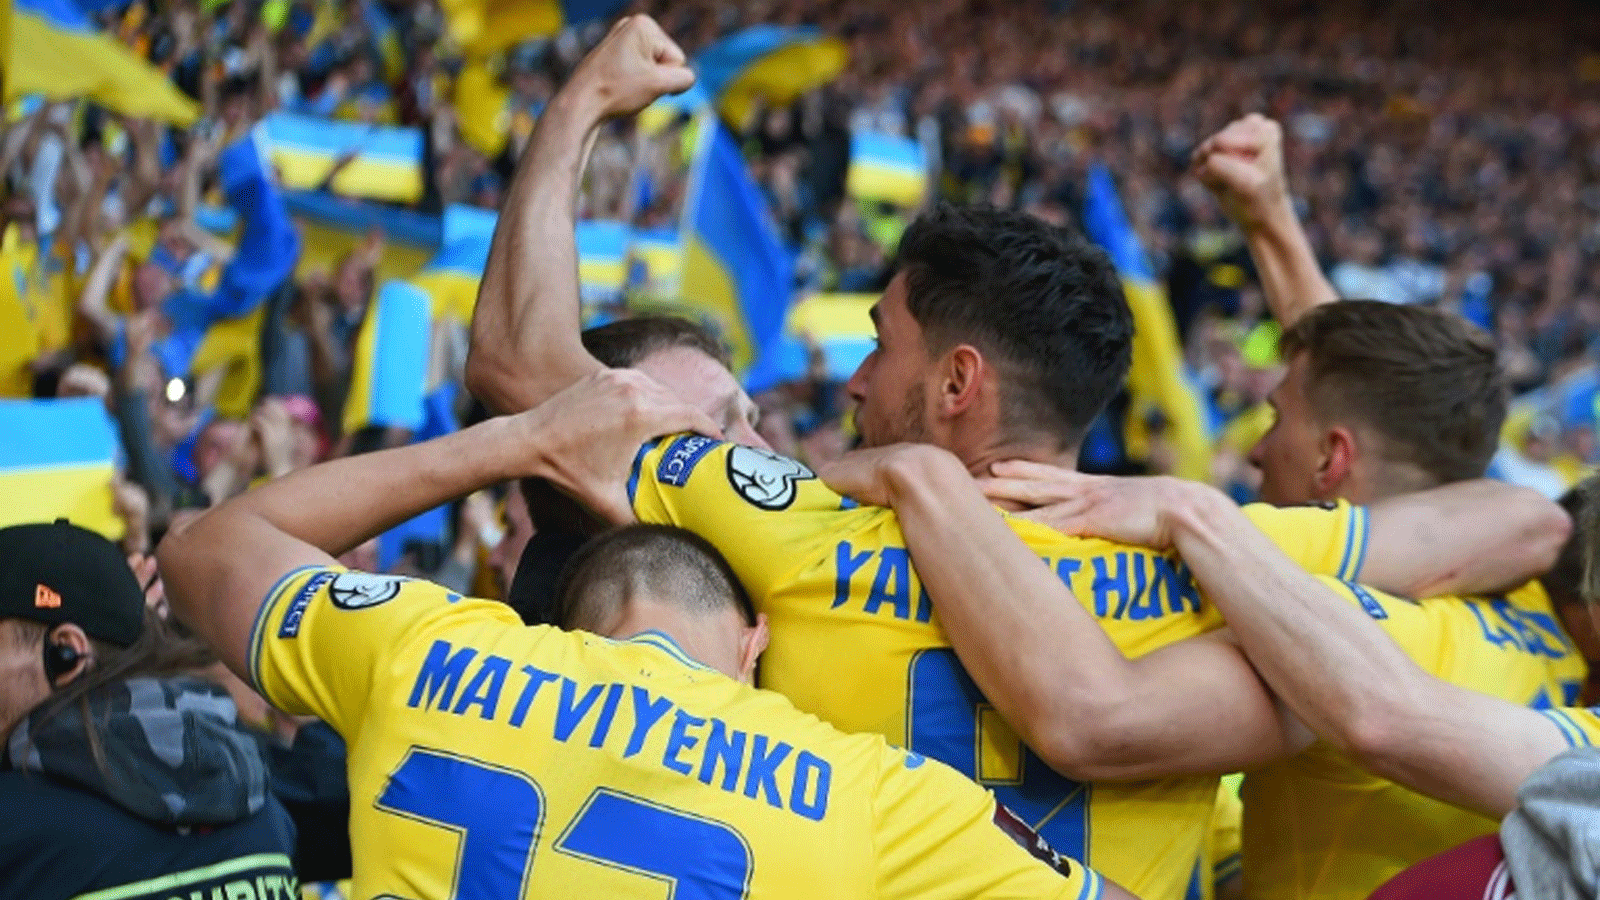 لاعبو أوكرانيا يحتفلون بتأهل منتخب بلادهم إلى نهائي الملحق الأوروبي المؤهل إلى مونديال قطر 2022 بفوزهم على اسكتلندا في غلاسكو في الأول من حزيران/يونيو 2022